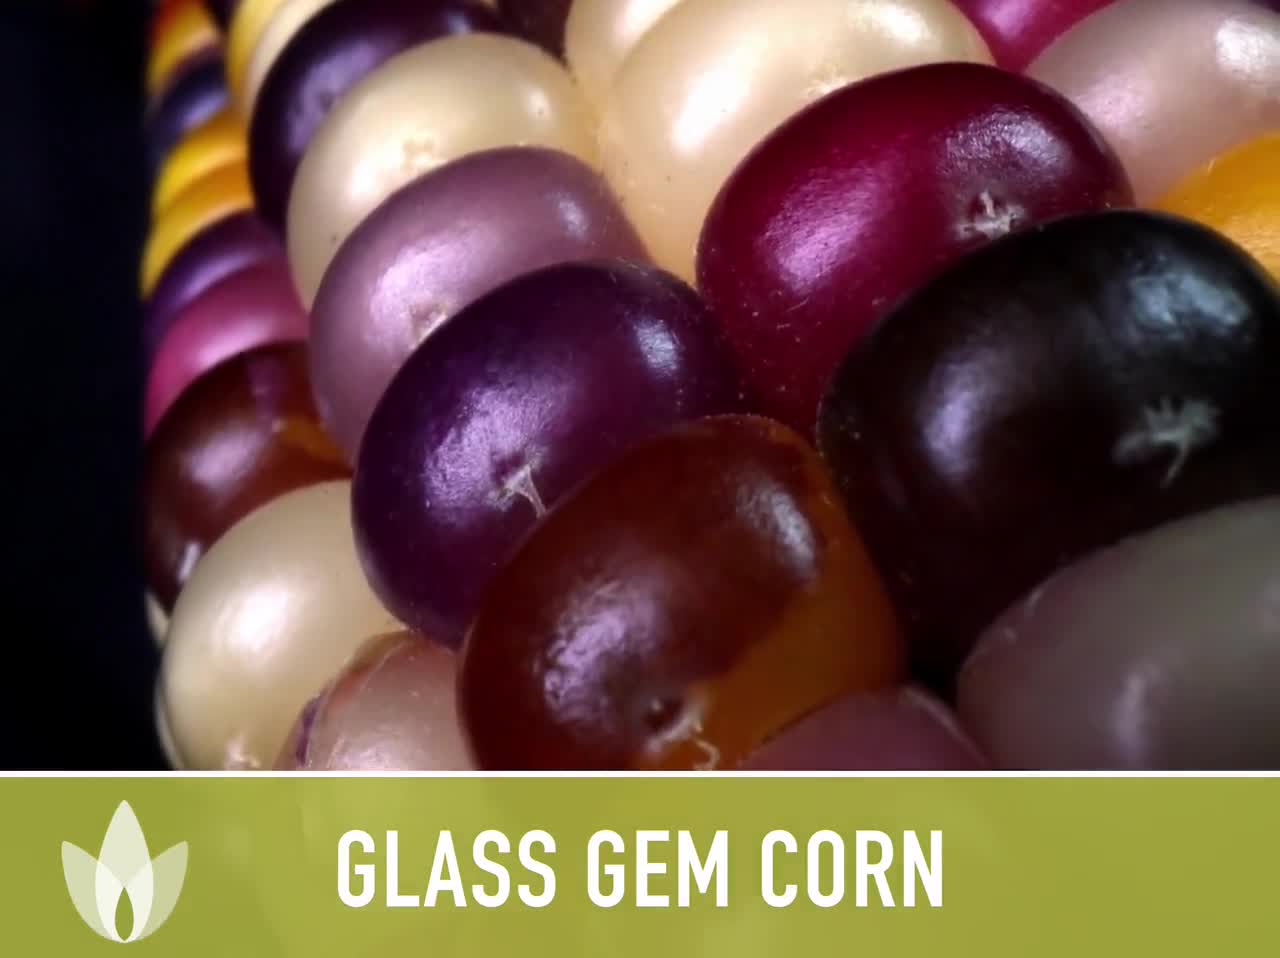 Glass Gem Flint Corn Seeds